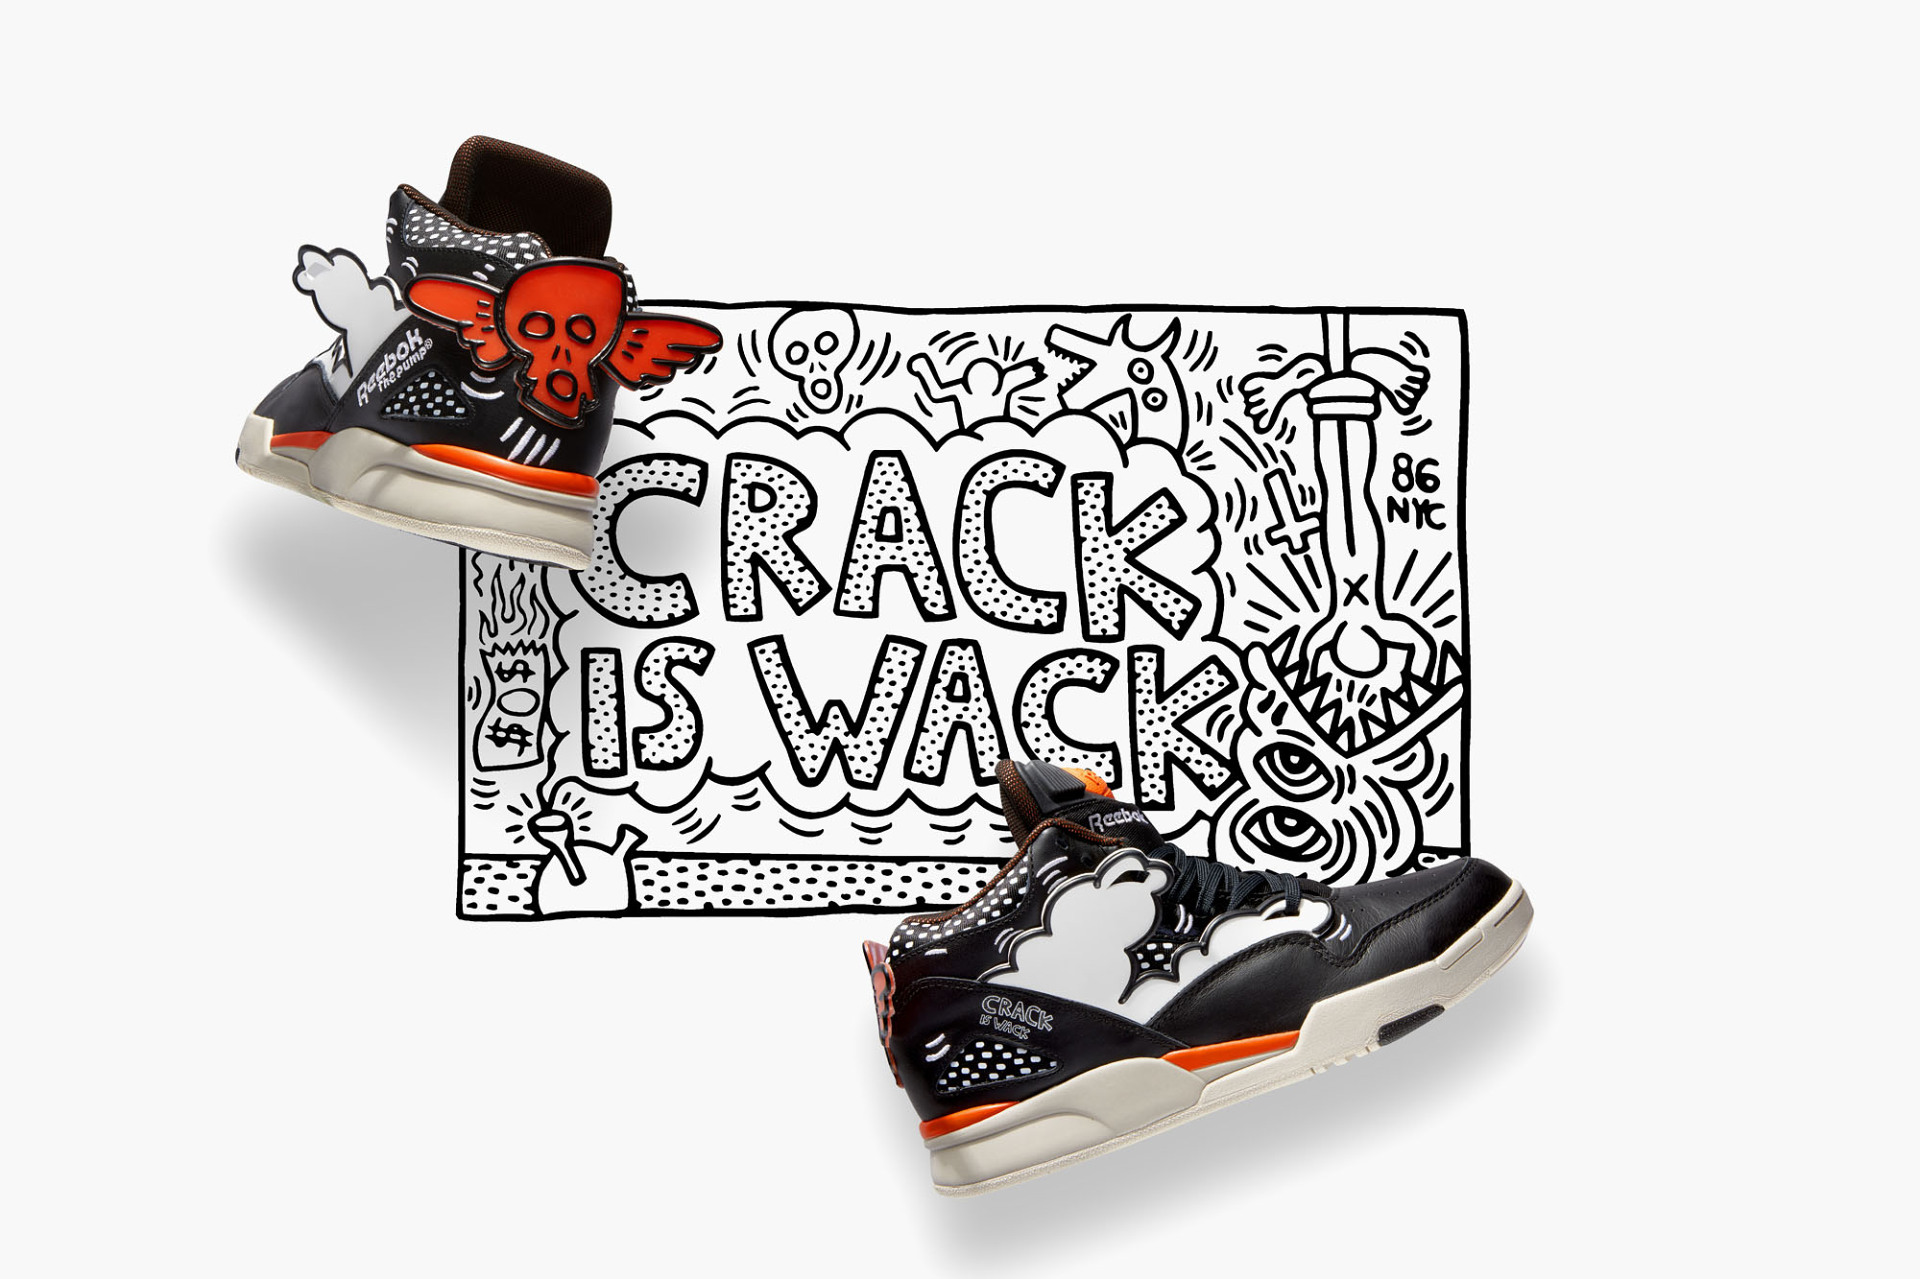 Reebok Classic x Keith Haring/Получились интересные кроссовки!